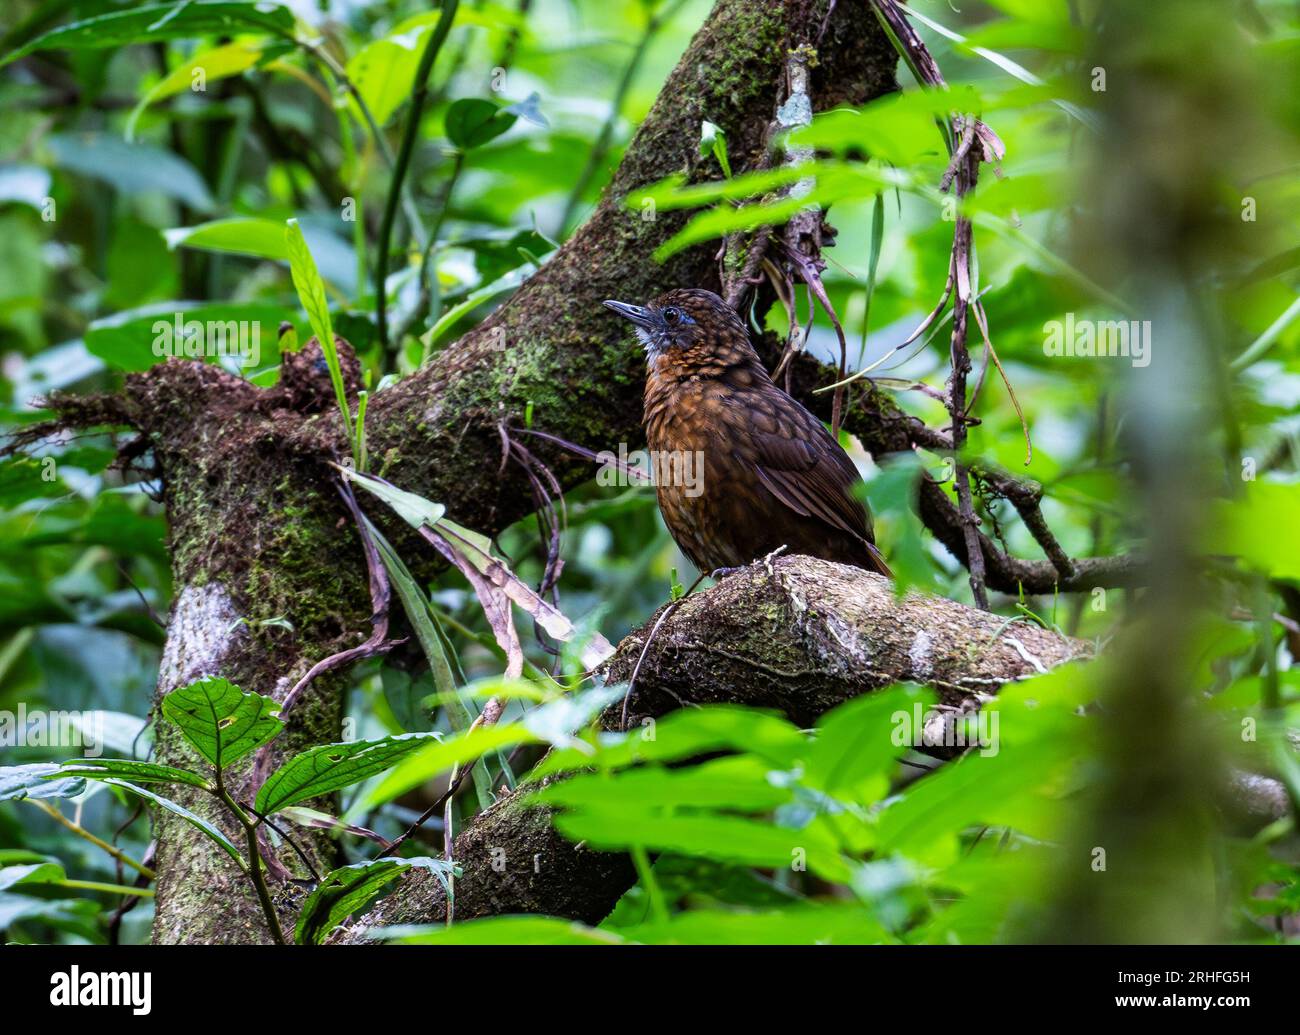 Un Wren-Babbler dal petto arrugginito (Gypsophila rufipectus) in piedi su un tronco nella foresta tropicale. Sumatra, Indonesia. Foto Stock